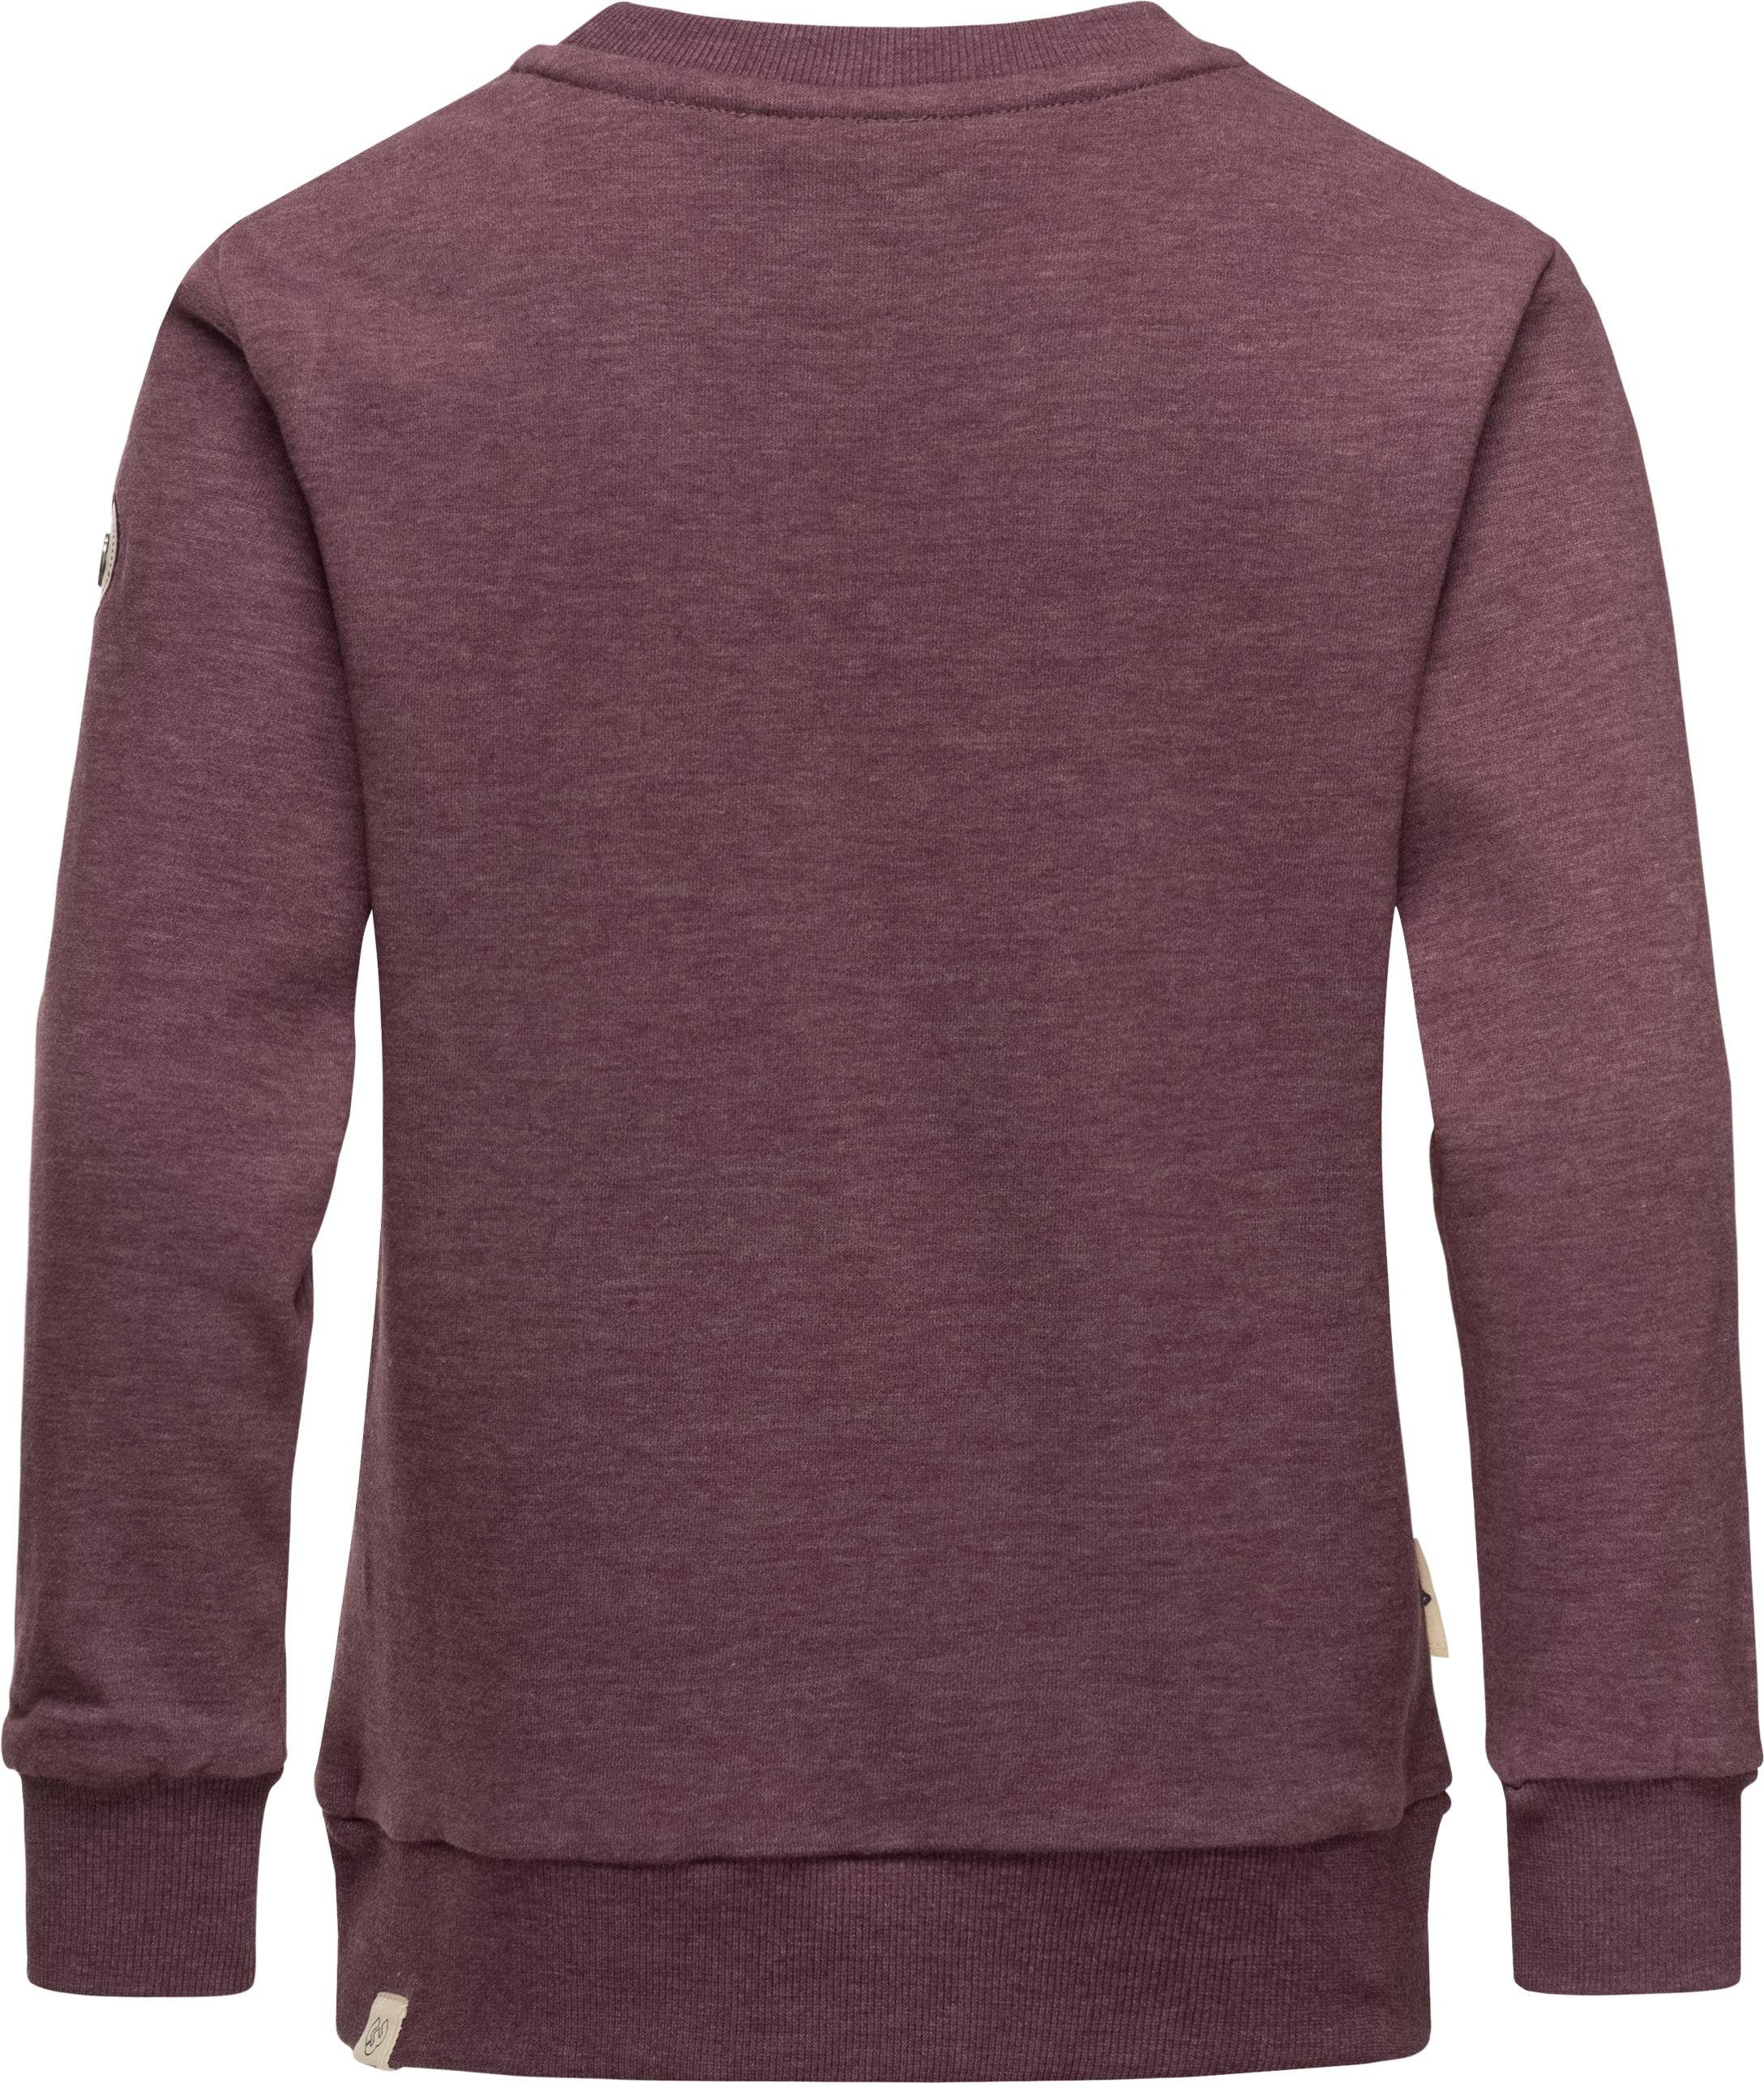 Ragwear Sweater Evka Print Organic Mädchen pflaume stylisches coolem mit Sweatshirt Print